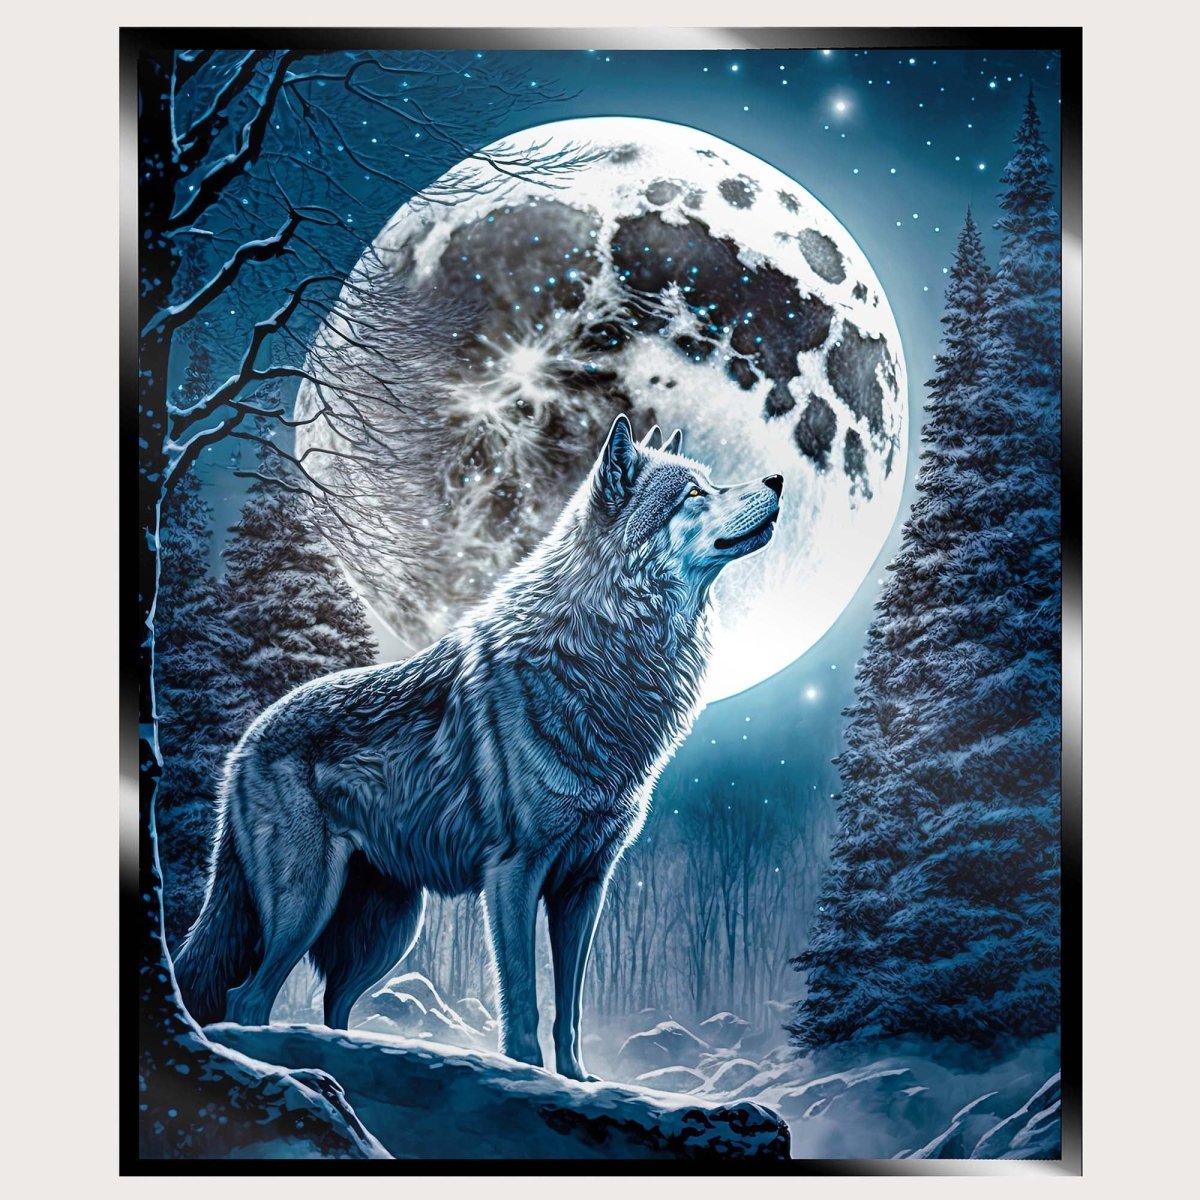 Illuminated Wall Art - Howling Wolf - madaboutneon